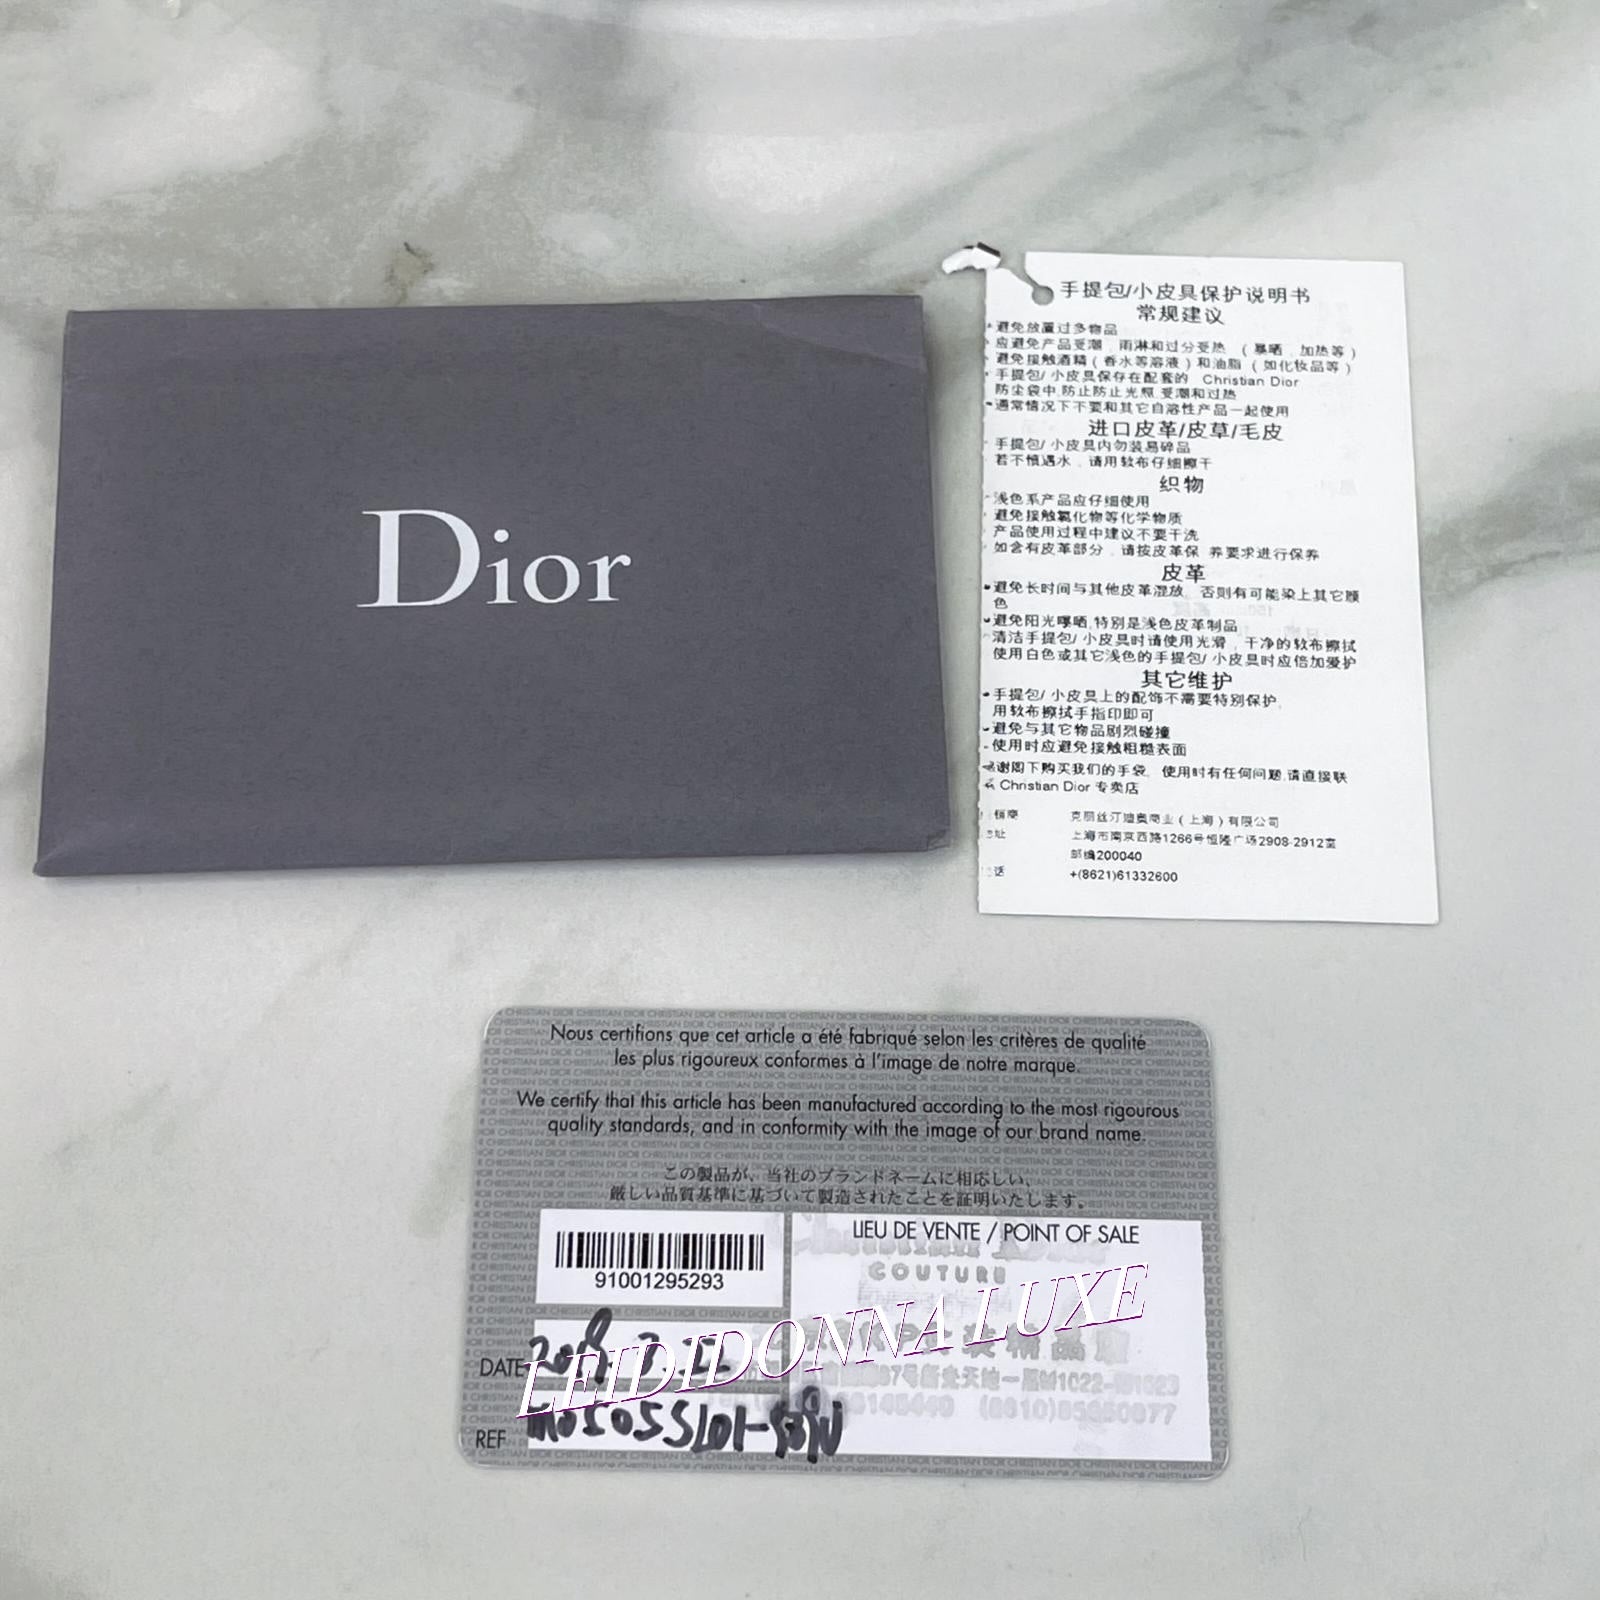 Christian Dior Saddle Small/Mini